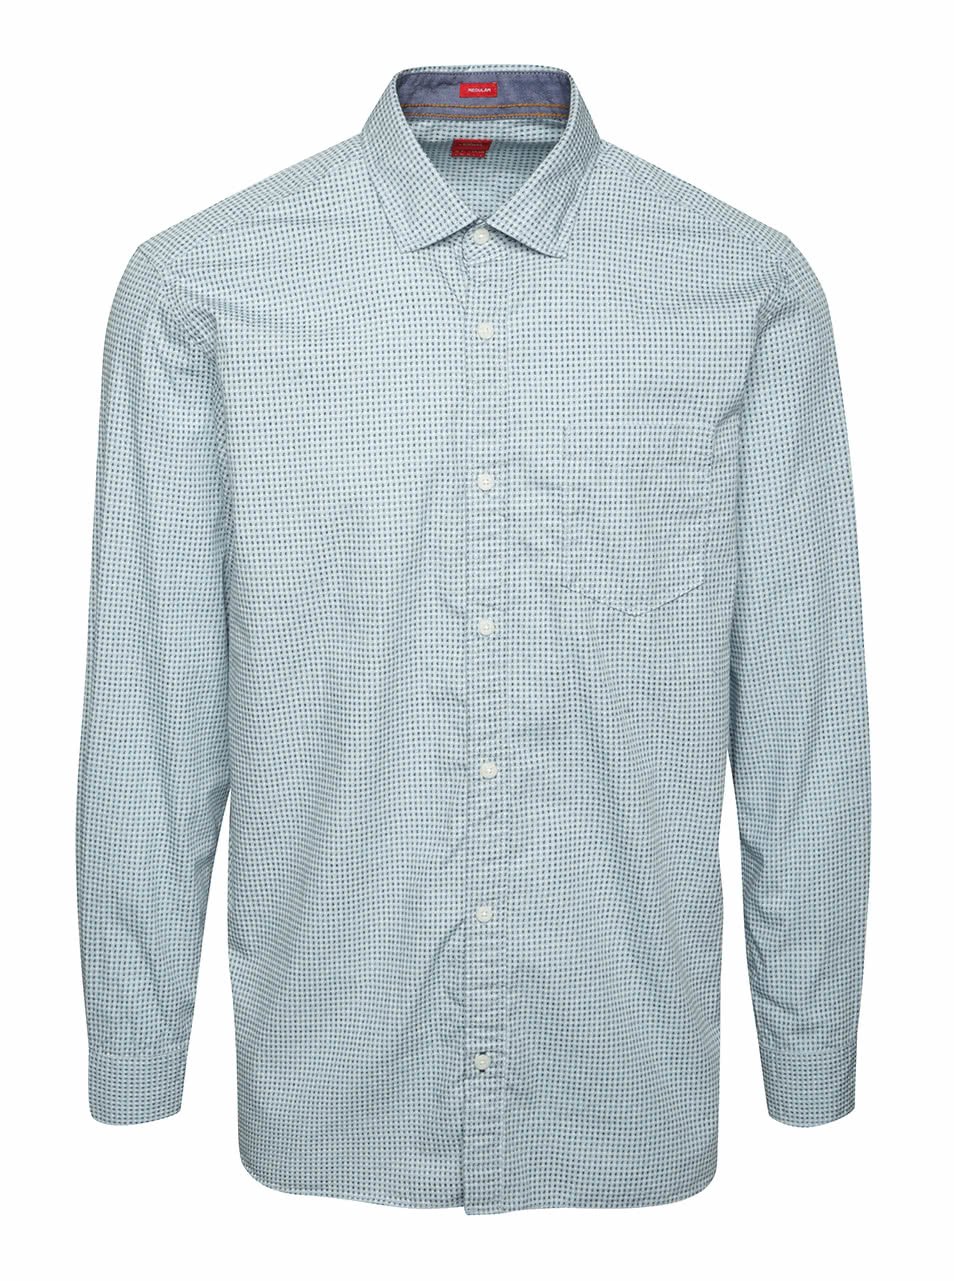 Světle modrá pánská regular fit košile se vzorem a kapsou s.Oliver